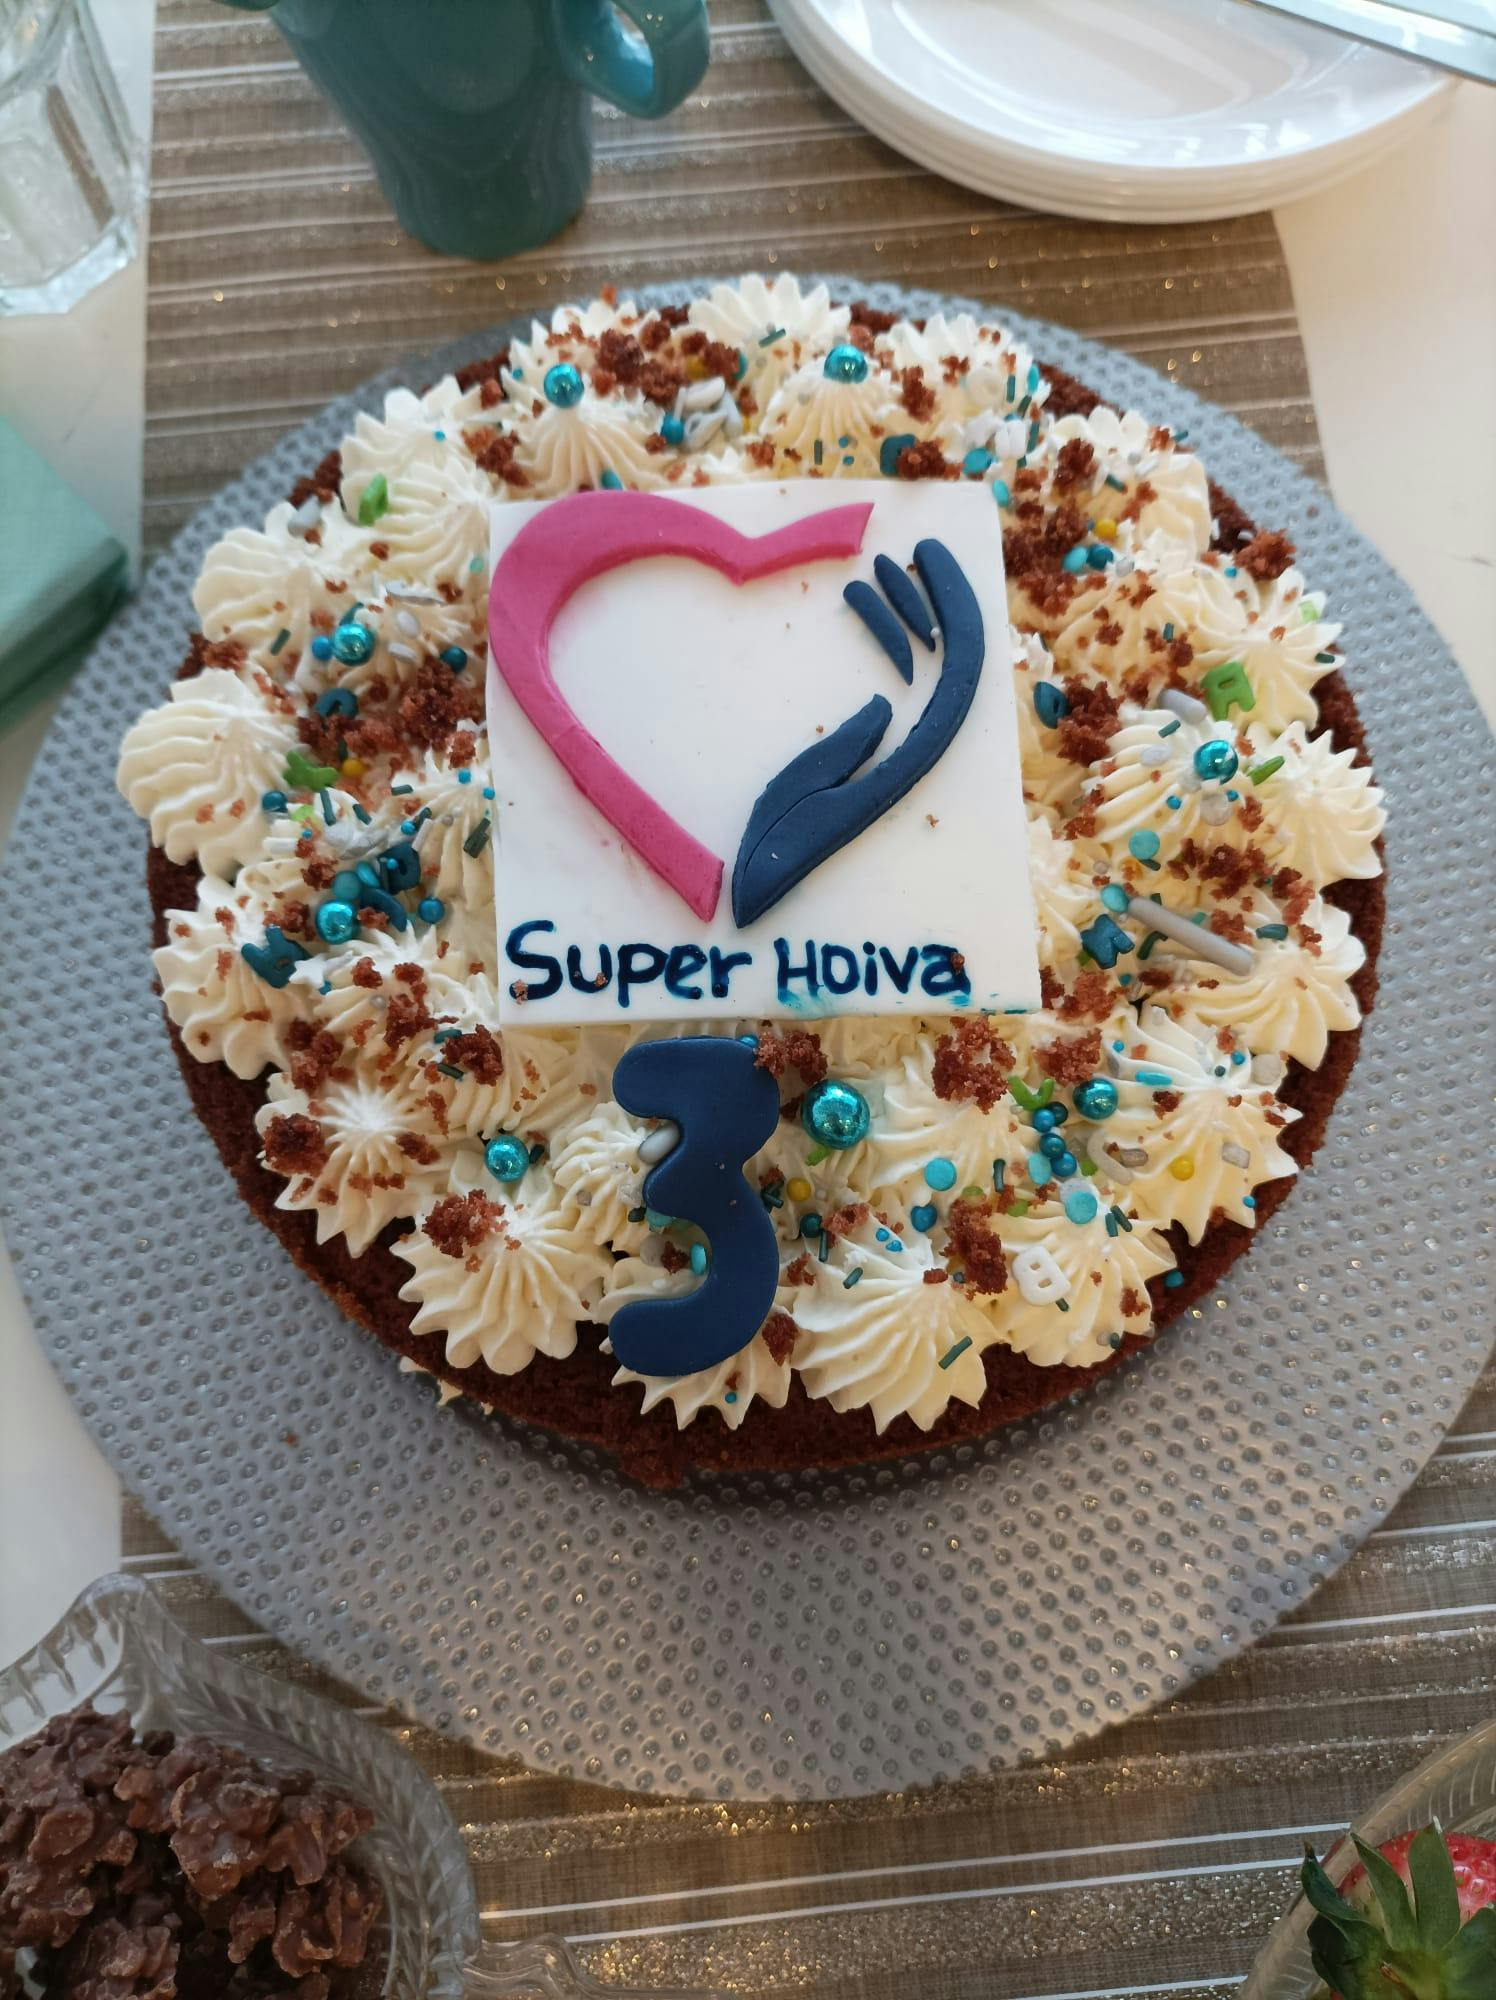 SuperHoiva Oy täytti 3 vuotta